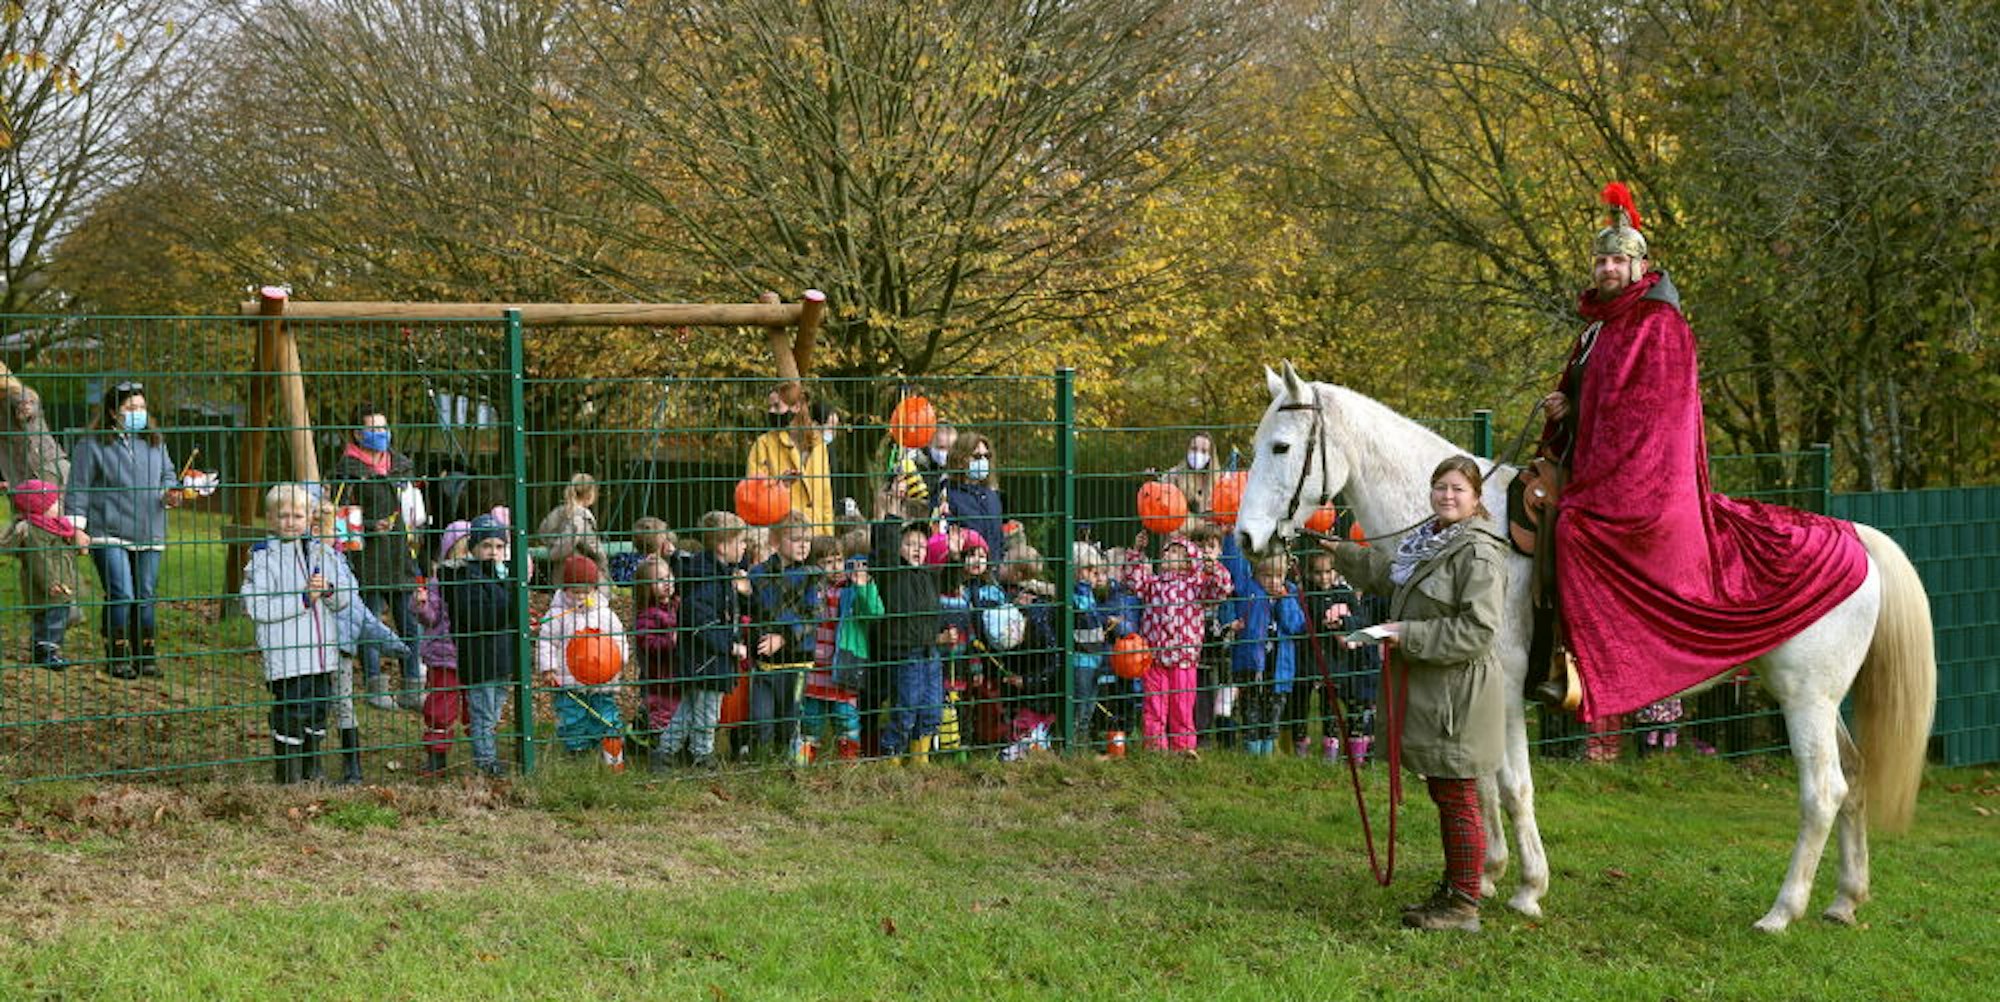 Hinter dem Zaun des Kindergartengeländes in Drabenderhöhe und mit genügend Abstand begrüßte Sankt Martin die Kinder bei seinem spontanen Ausritt auf Pferd Pü.